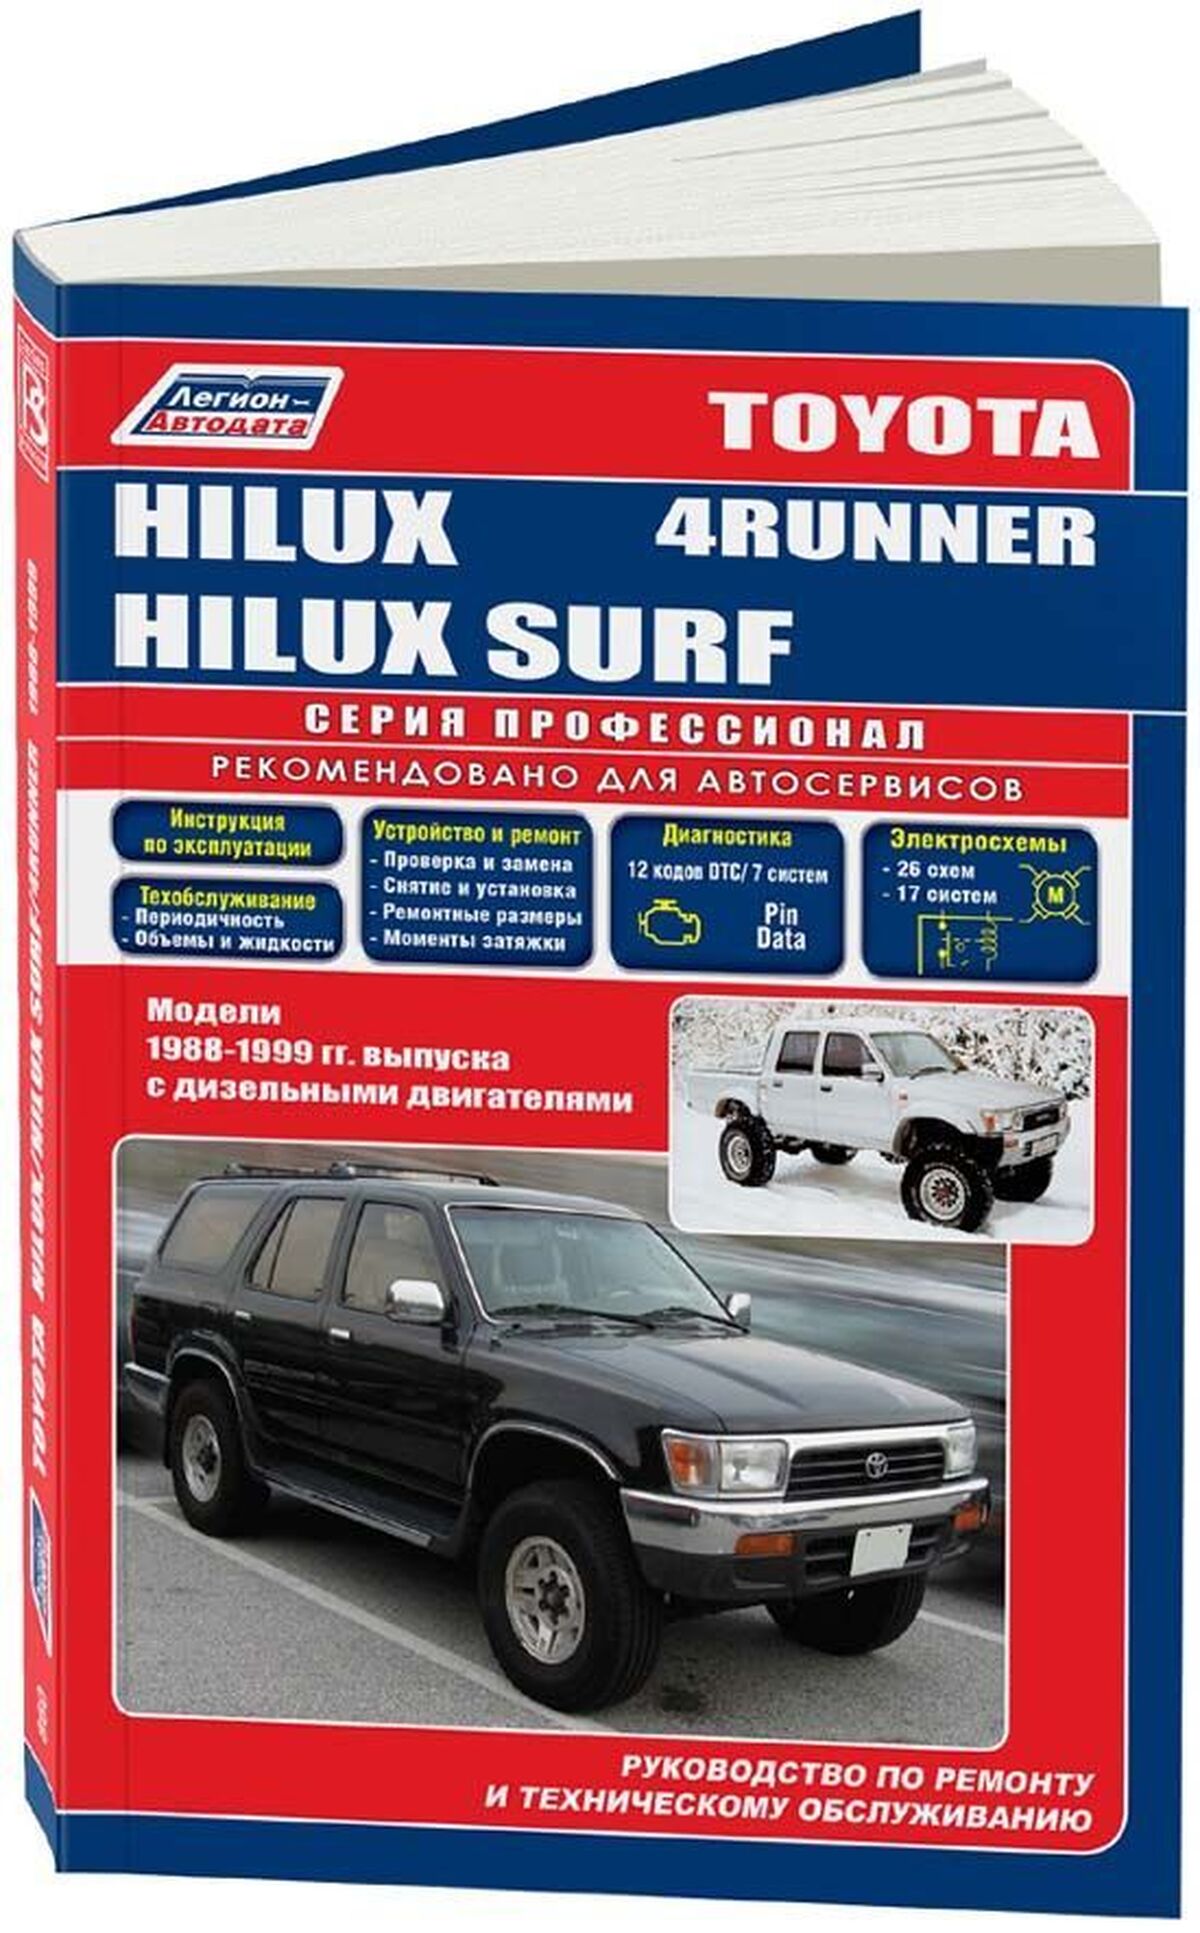 Книга: TOYOTA 4-RUNNER / HILUX SURF (д) 1988-1999 г.в., рем., экспл., то | Легион-Aвтодата